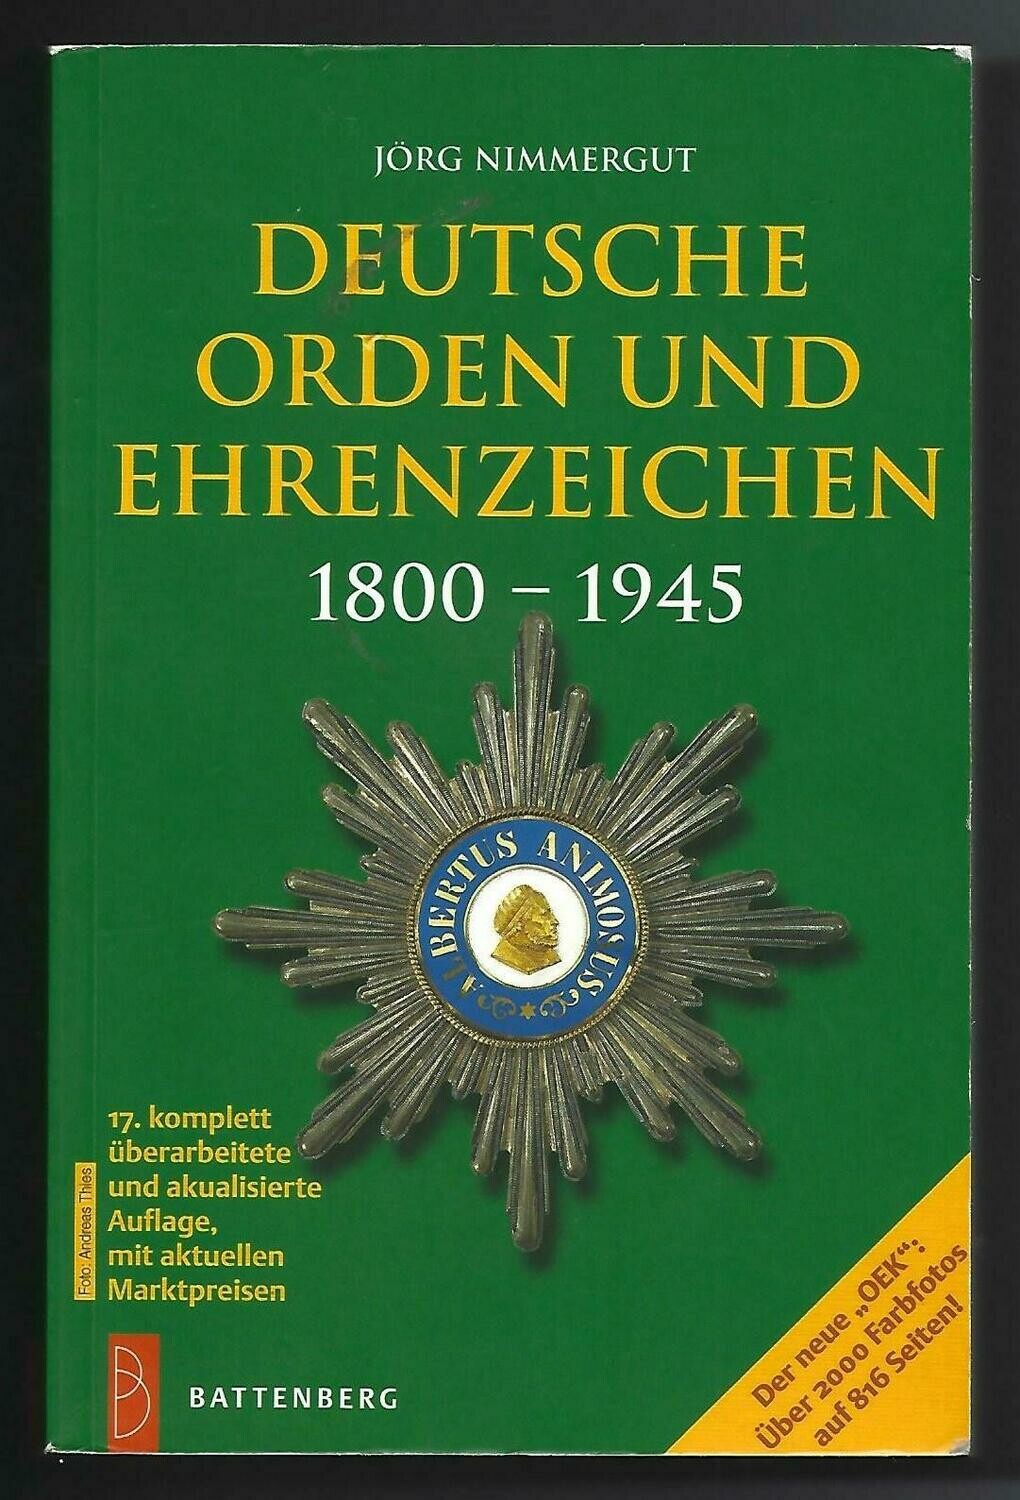 World; Jörg Nimmergut, "Deutsche Orden und Ehrenzwichen 1800-1945."